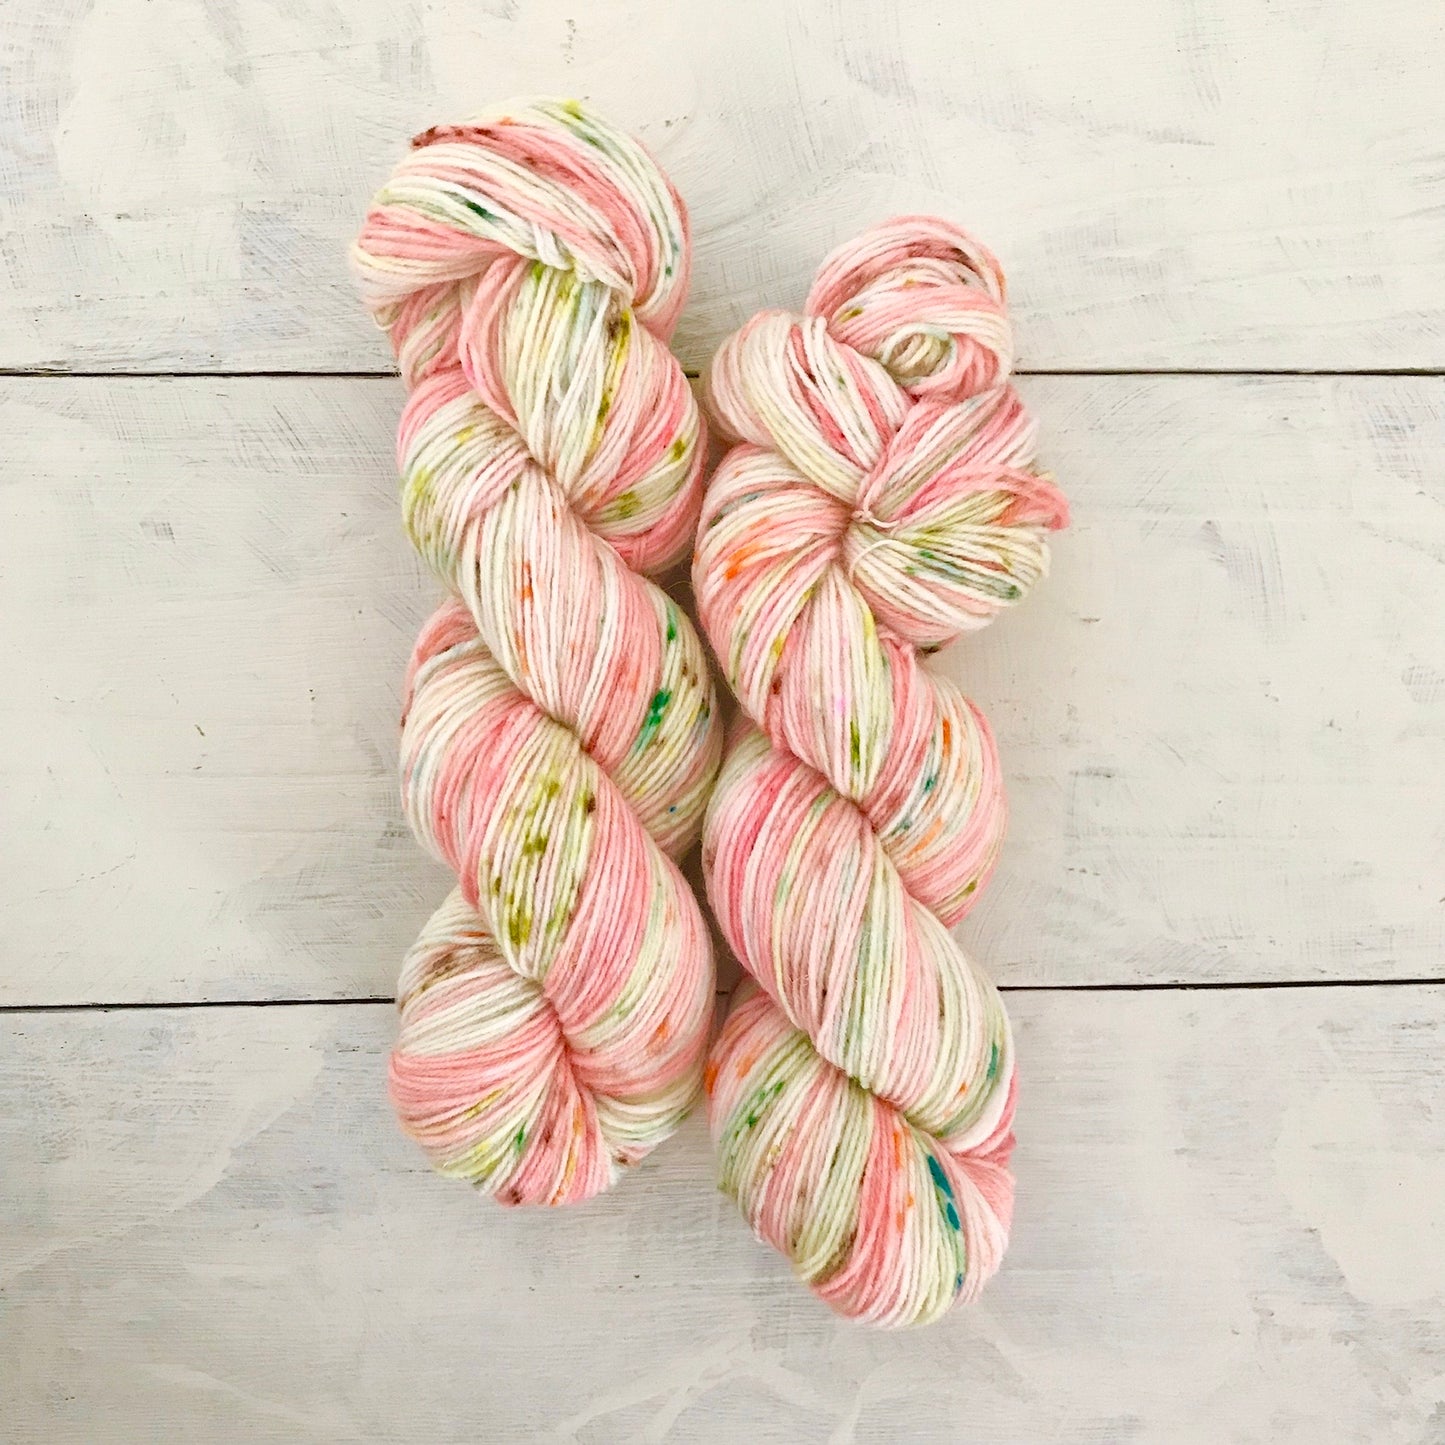 Hand-dyed yarn No.60 sock yarn "Canzonetta Sull' Aria"